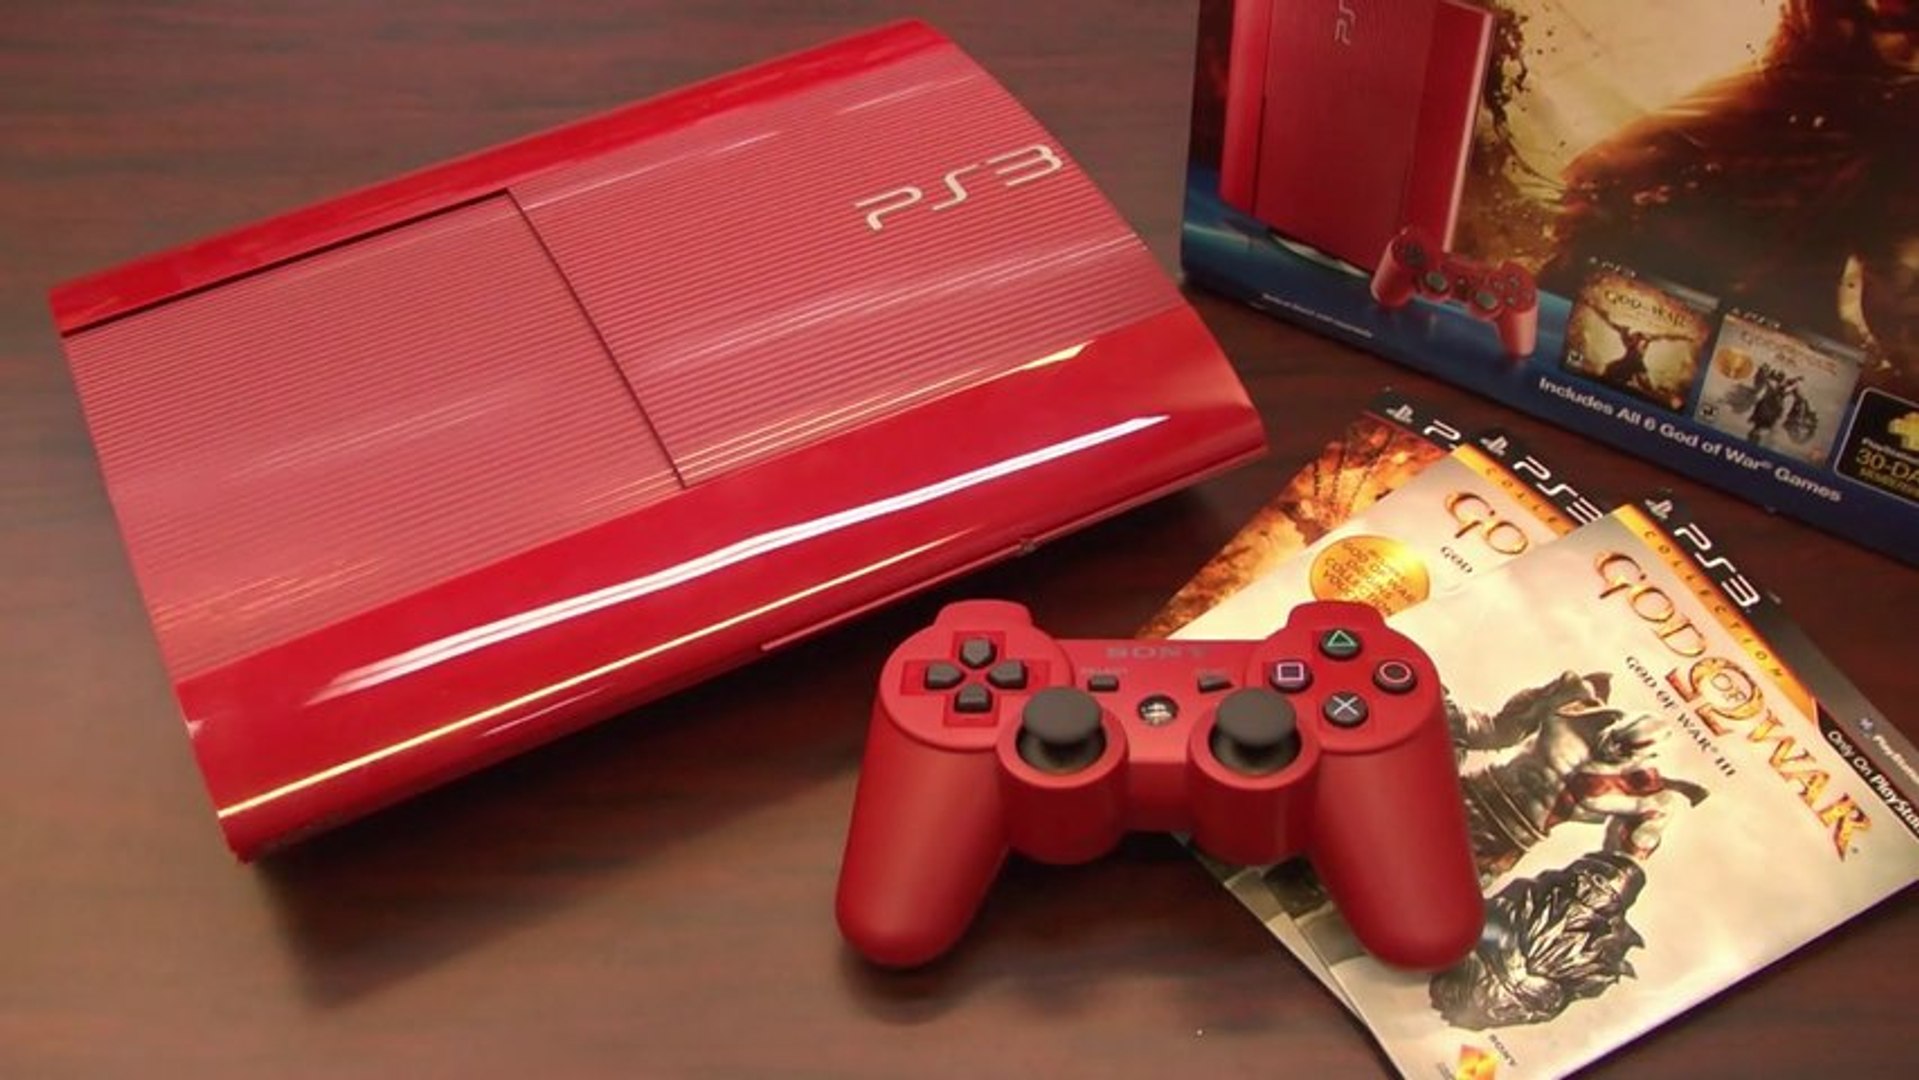 Пс 3 18. Ps3 super Slim Red. Плейстейшен 3 красный. PS 3 красная ps3. Ps3 super Slim Red геймпад.